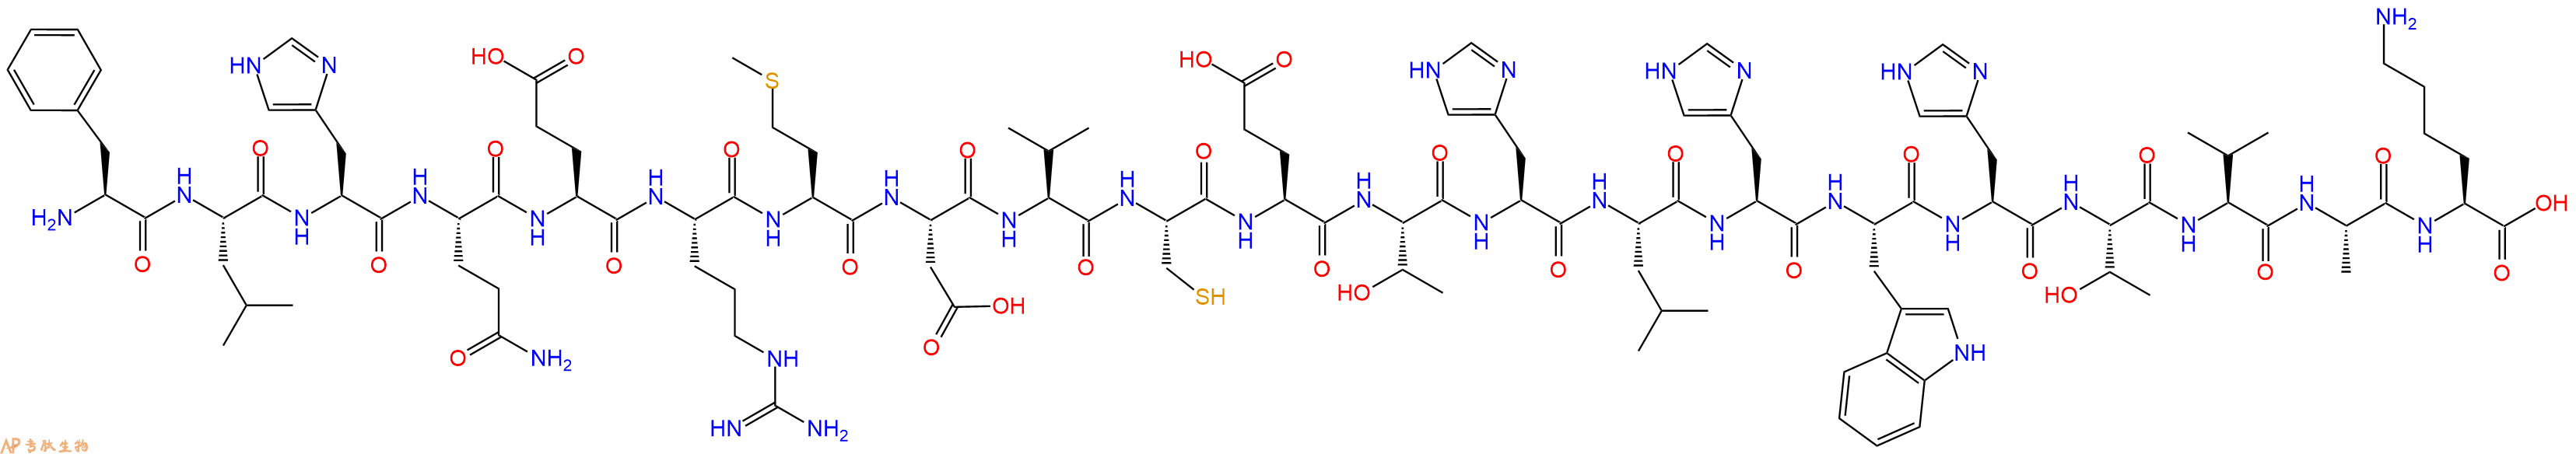 专肽生物产品淀粉肽Amyloid β/A4 Protein Precursor₇₇₀ (135-155)315229-44-8